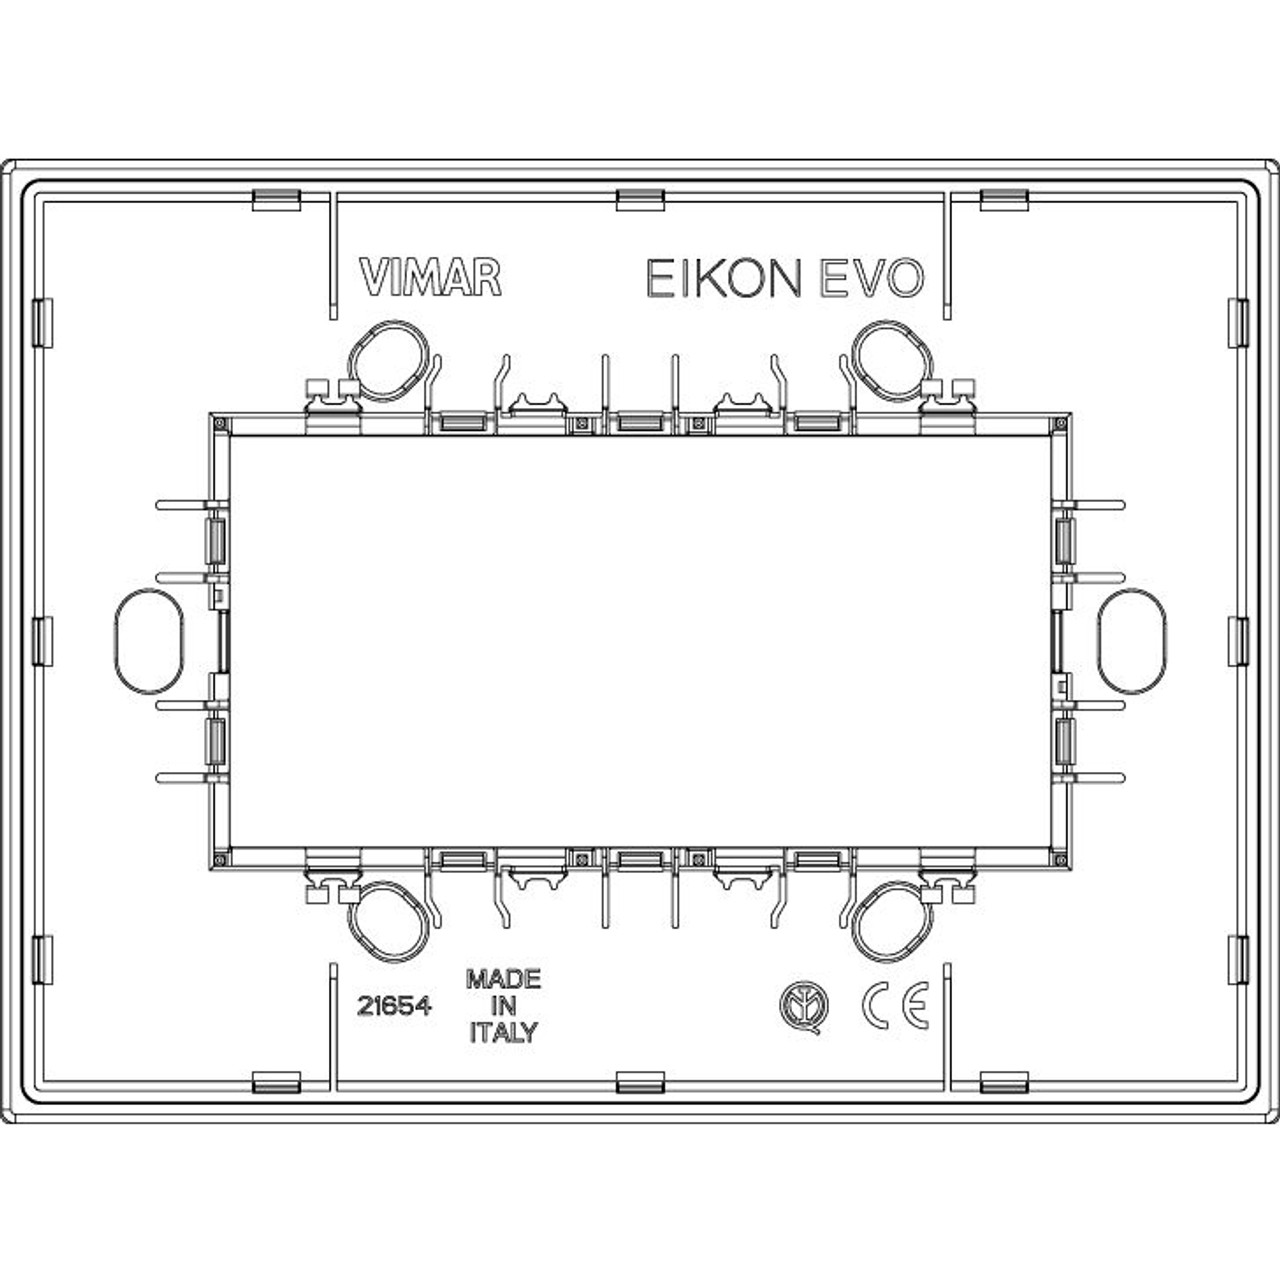 Vimar - Eikon EVO 21654 Cover Plate - 4 Module, Stone - Apollo Lighting